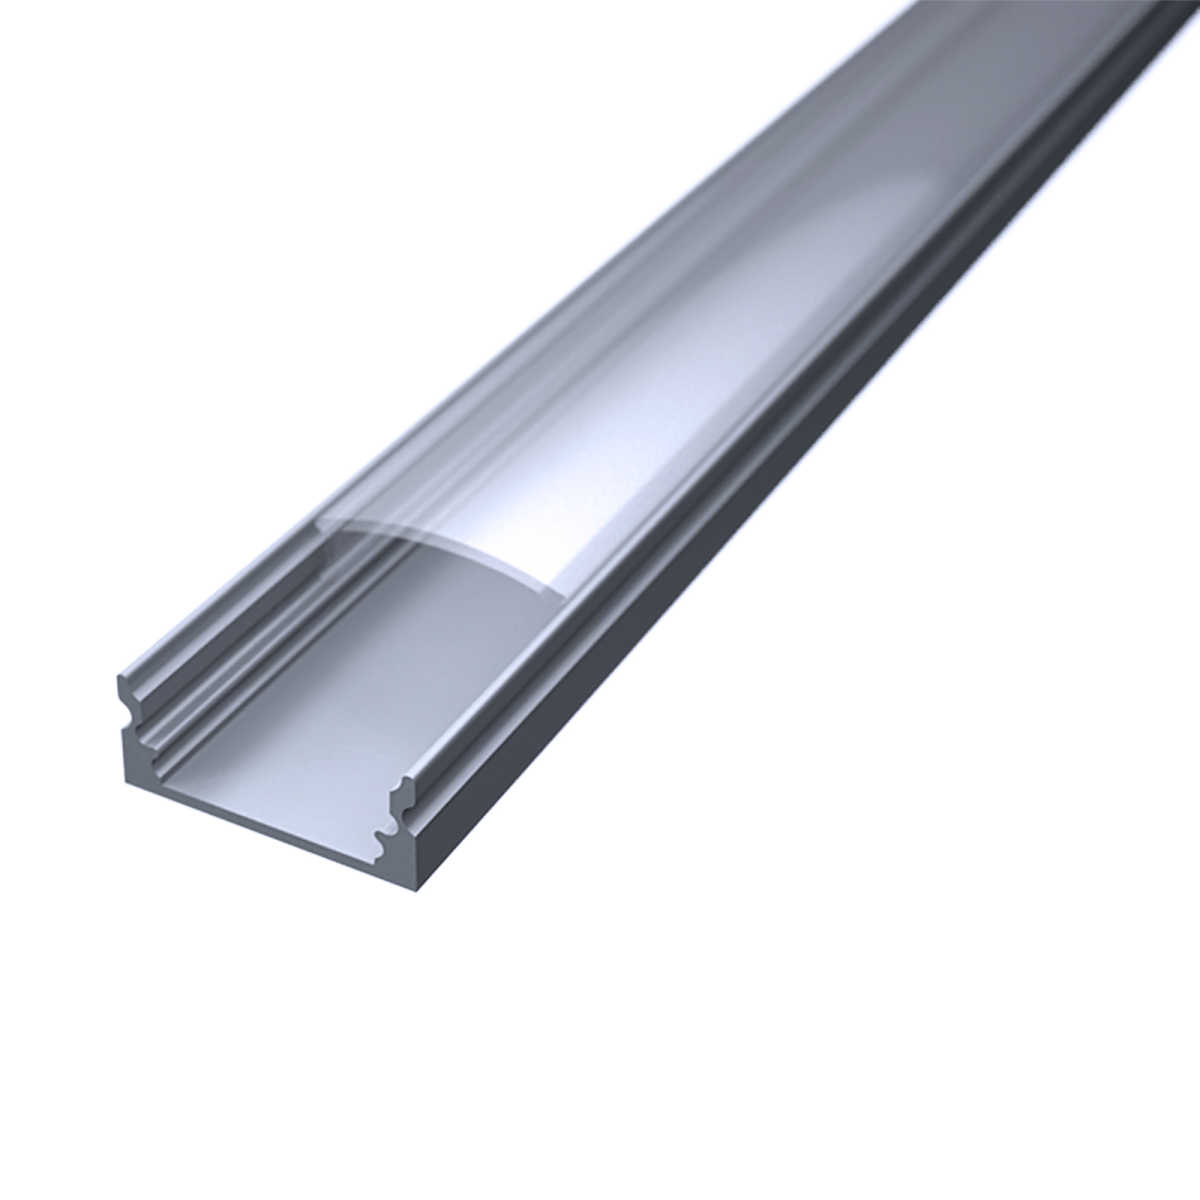 LED Flachprofil "Slim-Line" | Abdeckung transparent | Zuschnitt auf 64cm |